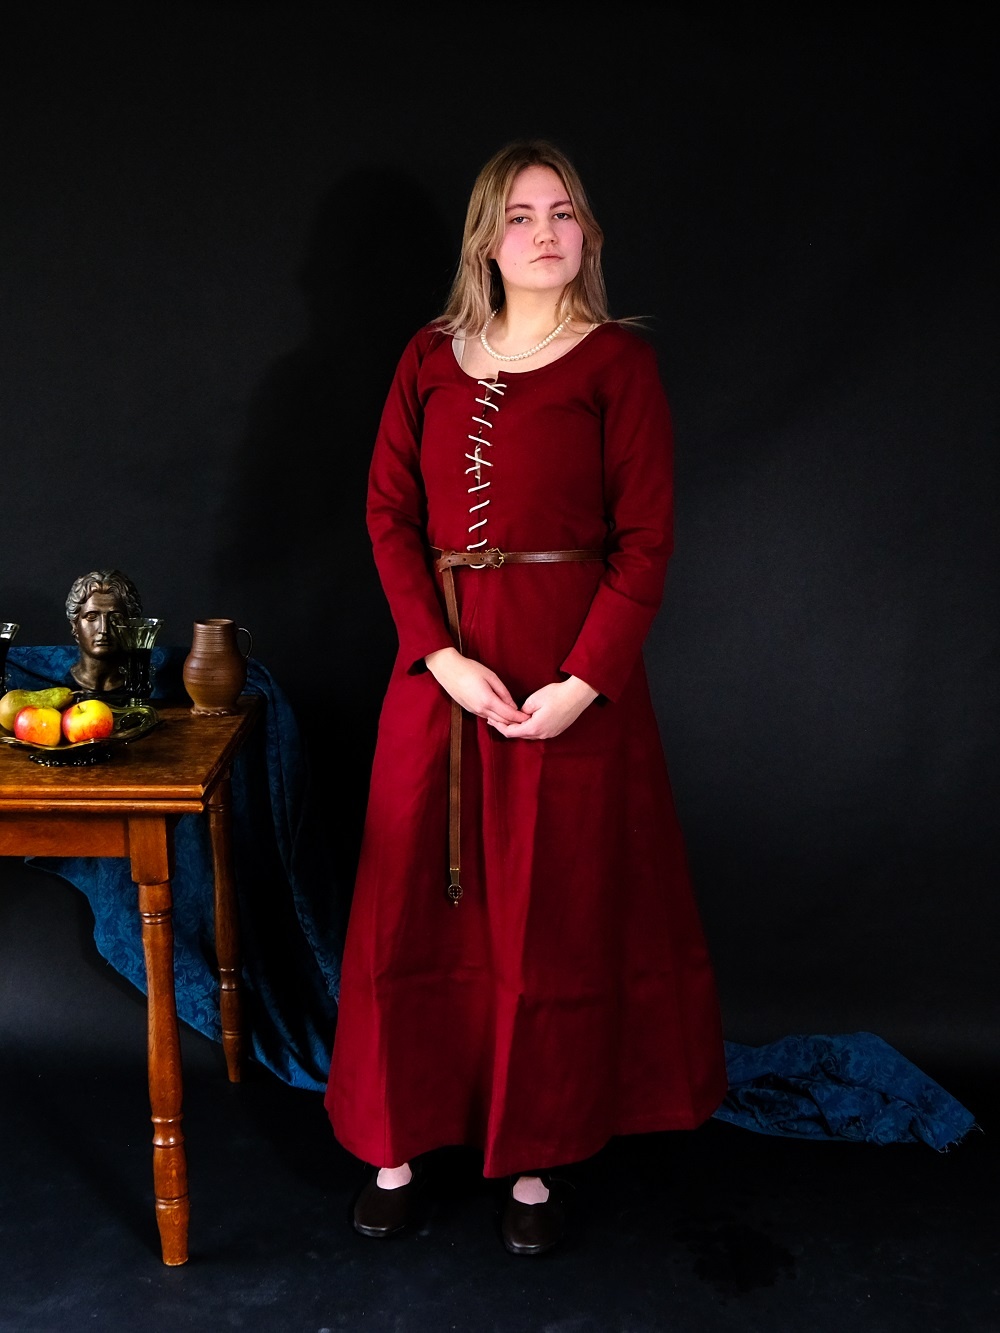 Get the Look: Frau aus dem 15. Jahrhundert  in Cotehardie